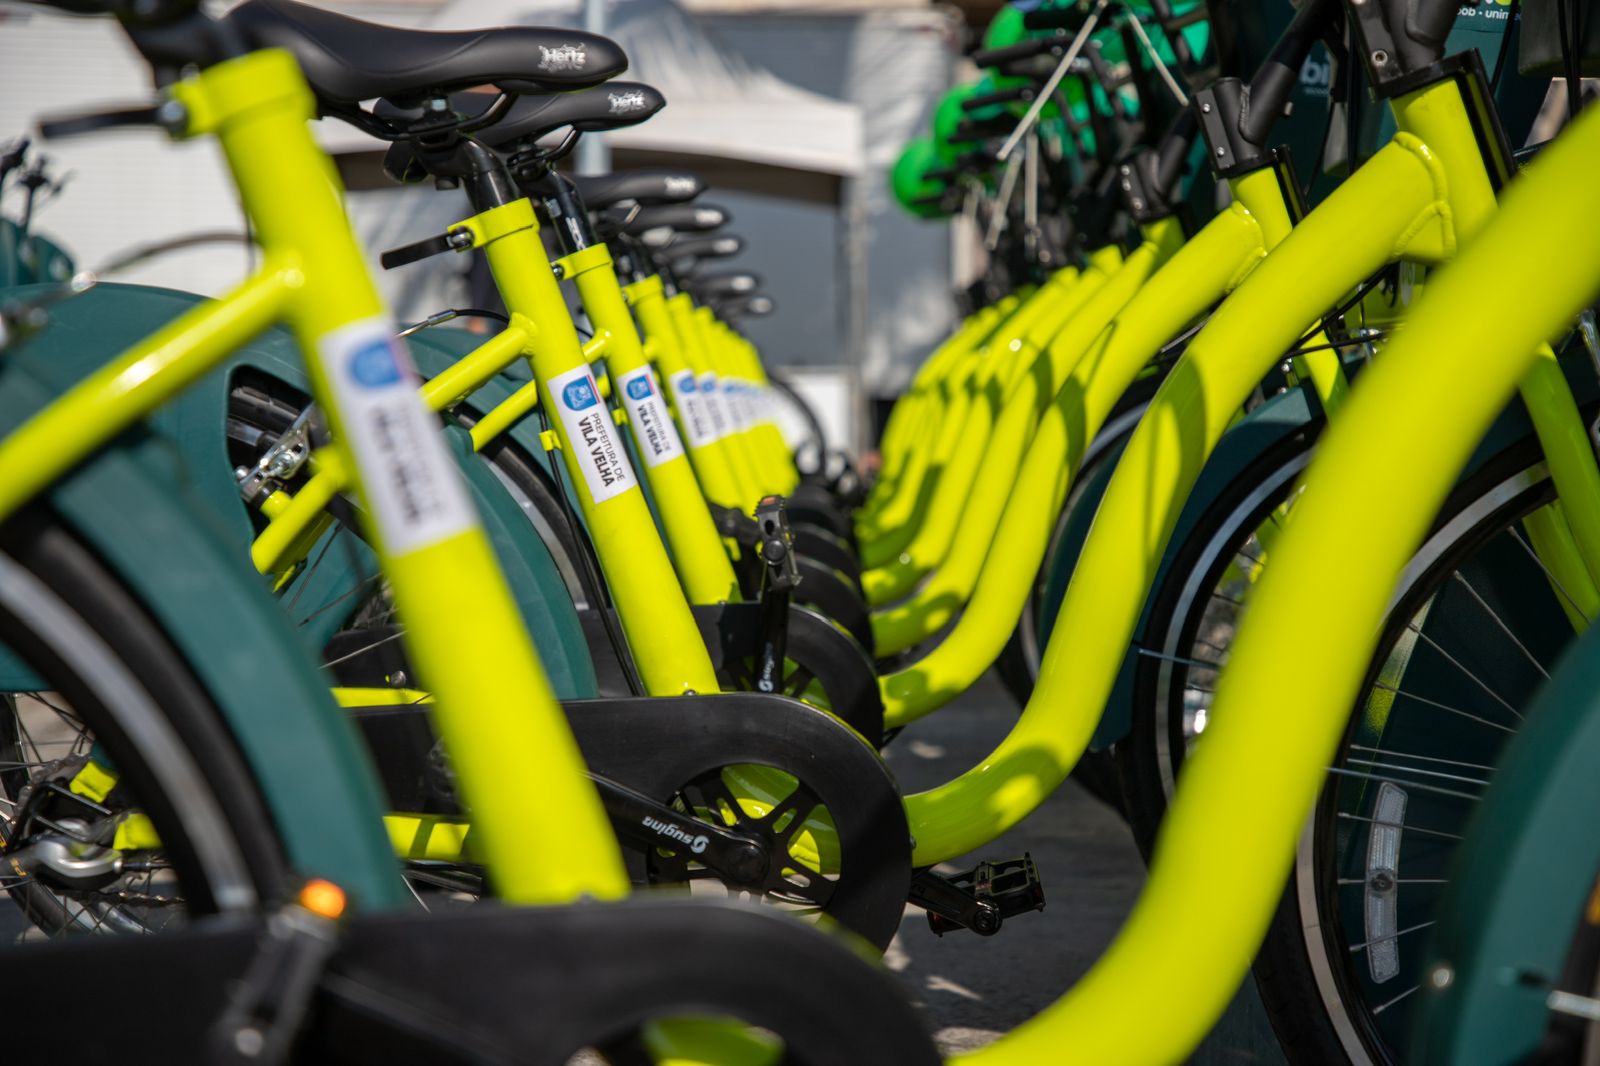 A operação do sistema canela-verde é feita pela mesma empresa responsável pelo gerenciamento do Bike Vitória, o que permitiu a integração; saiba mais